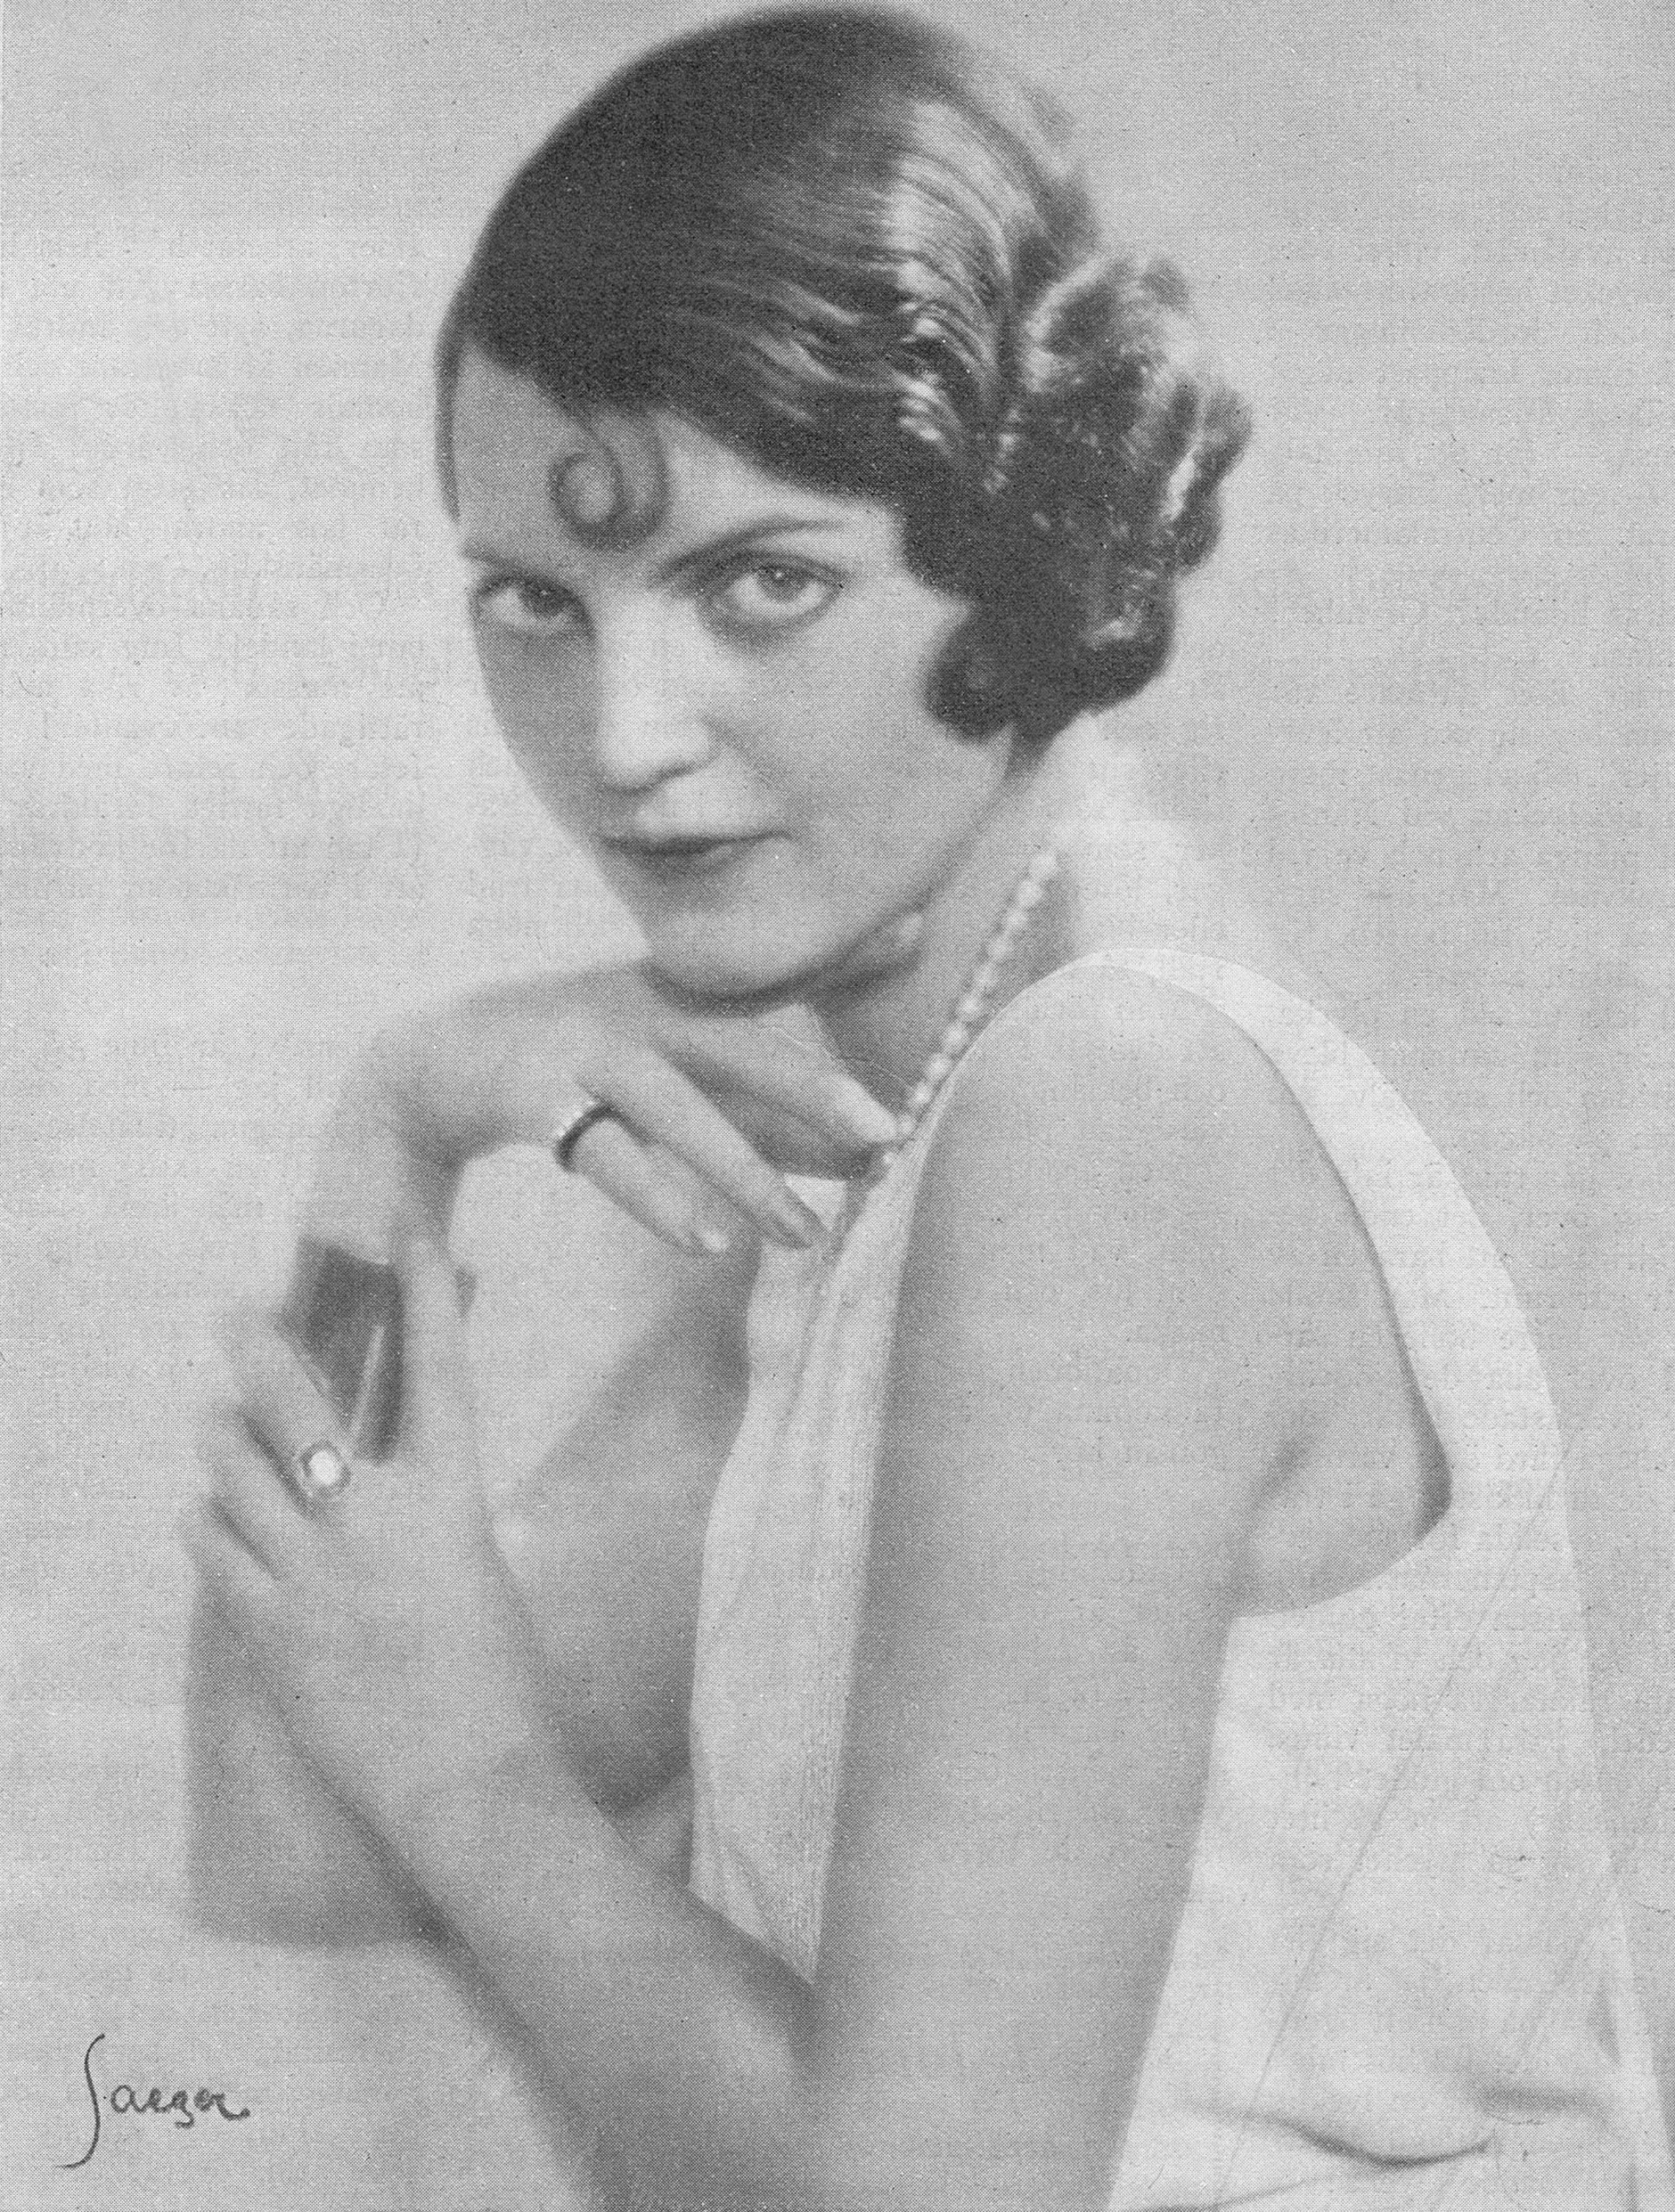 Margit Manstad avbildad i tidskriften Idun, 1931. Fotograf: Atelier Jaeger, Stockholm. Bildkälla: Svenskt Porträttarkiv (CC-BY-NC-SA 4.0; beskuren)